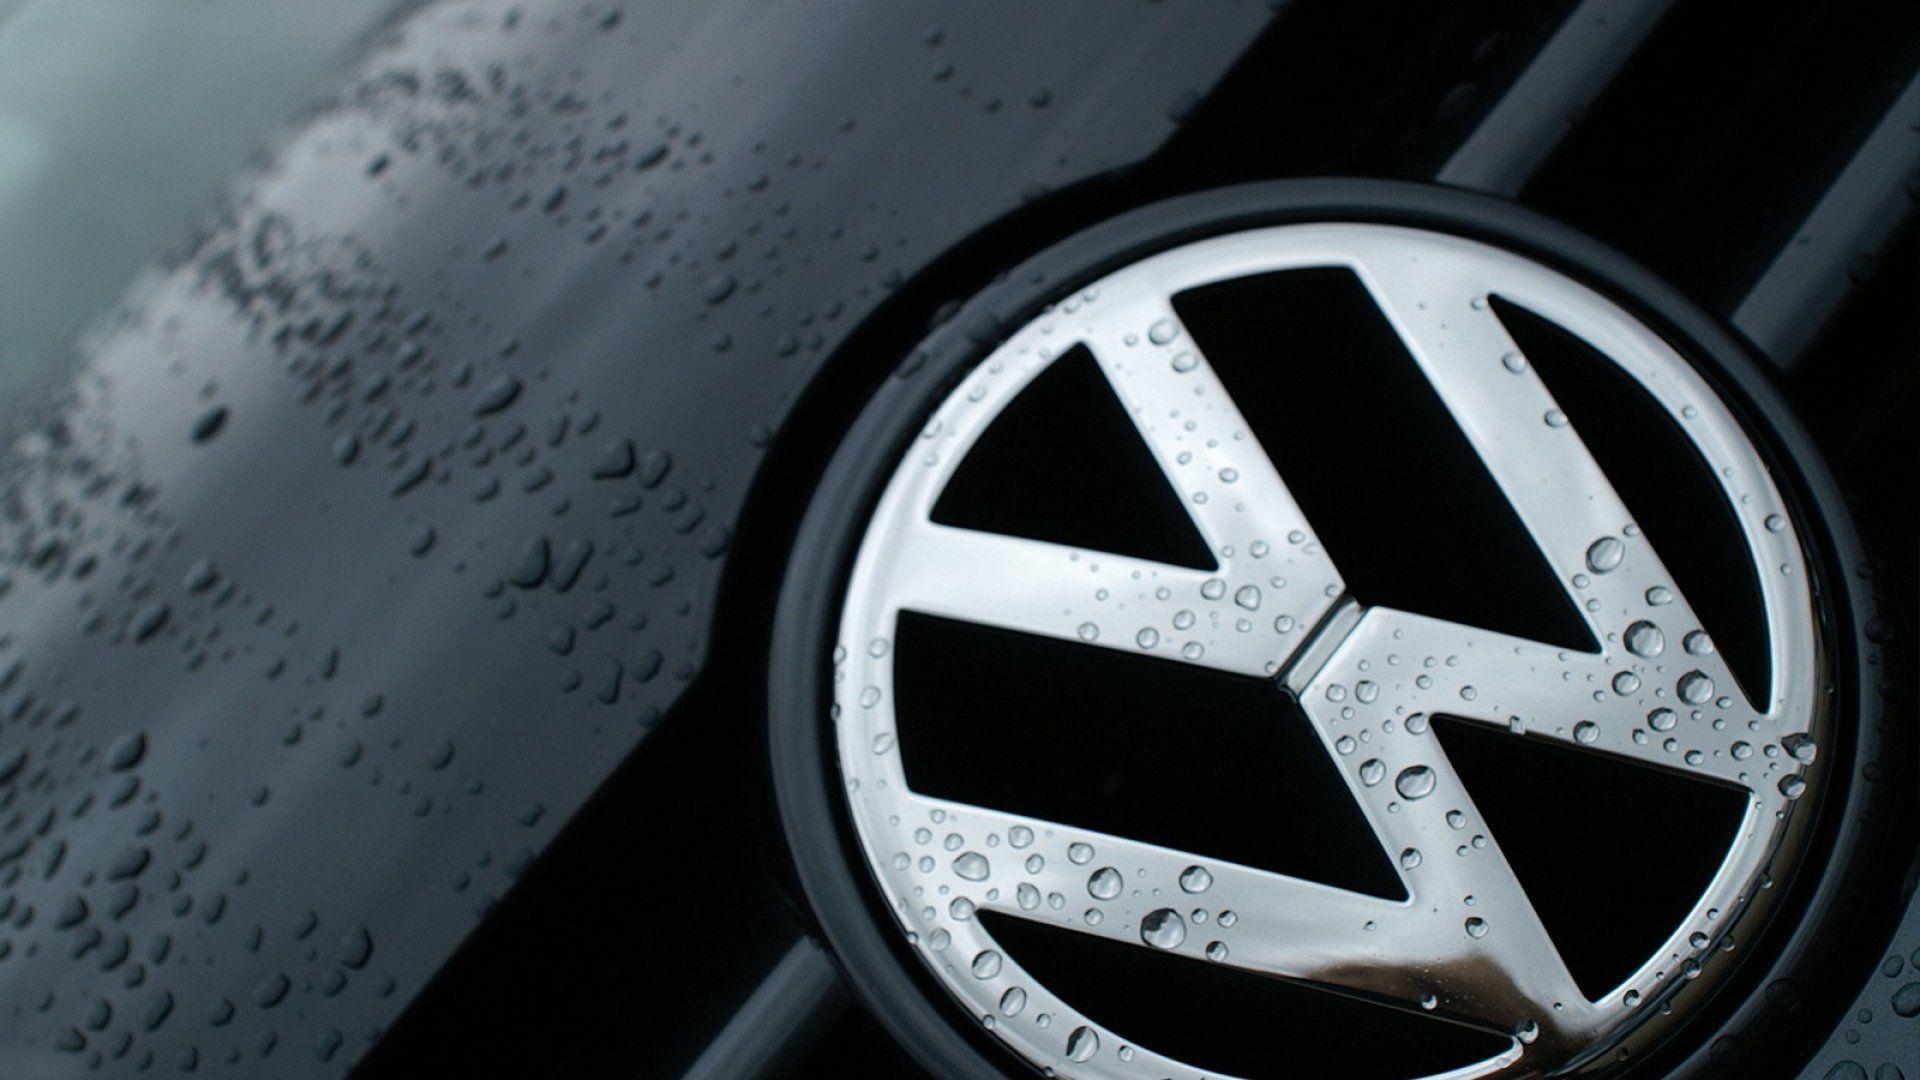 Volkswagen Hd Wallpapers Top Free Volkswagen Hd Backgrounds Wallpaperaccess